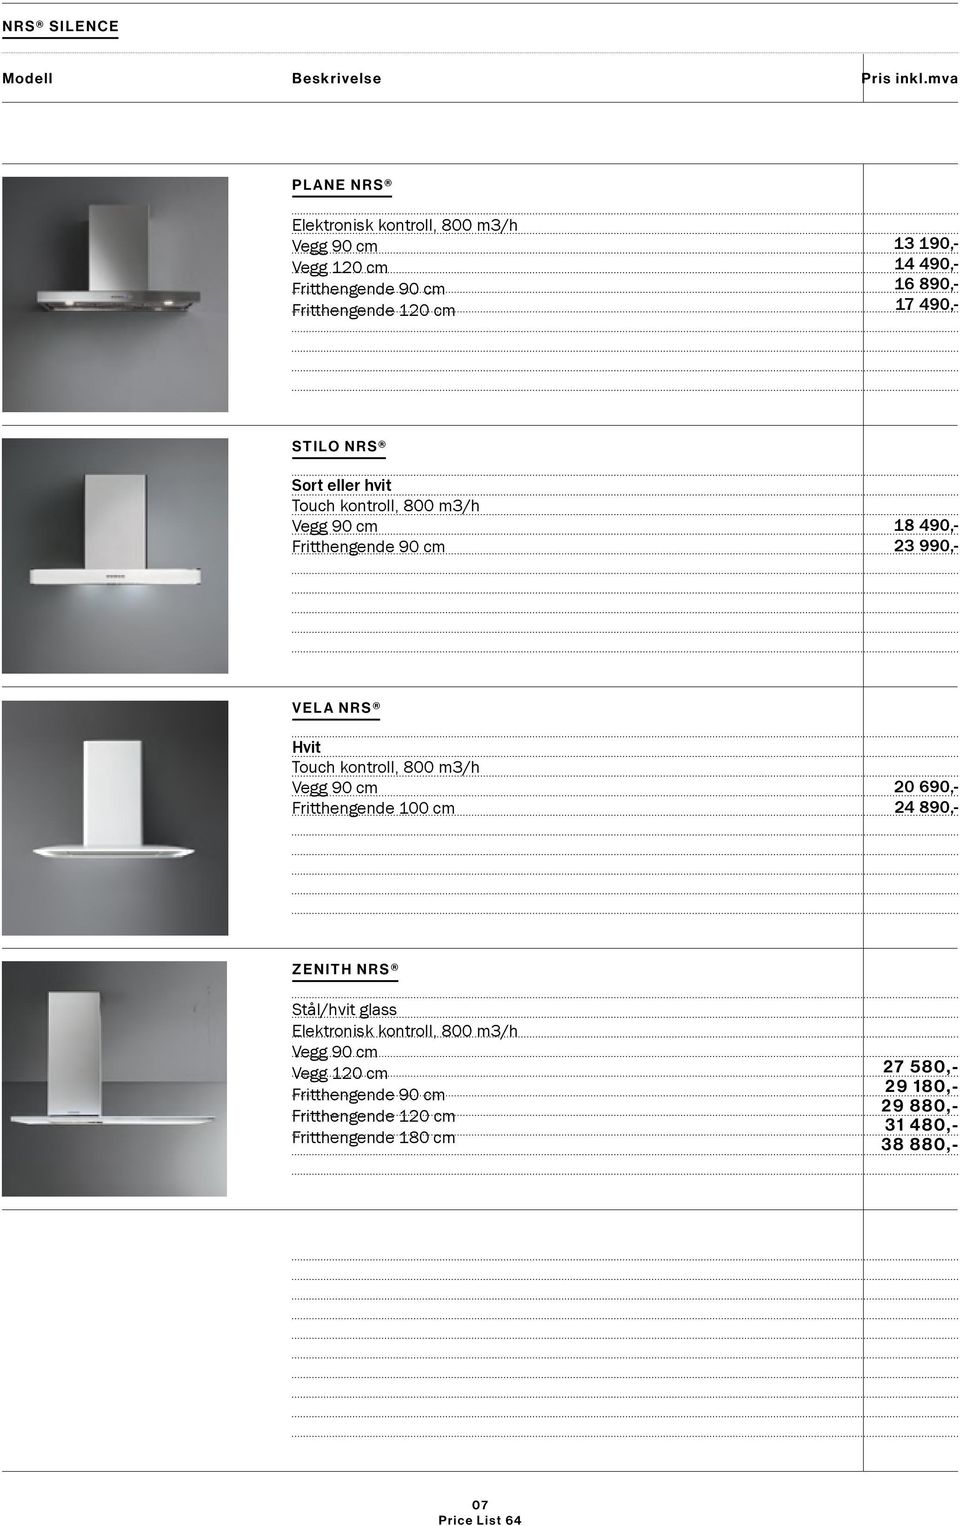 Hvit Touch kontroll, 800 m3/h Fritthengende 100 cm 20 690,- 24 890,- ZENITH NRS Stål/hvit glass Vegg 120